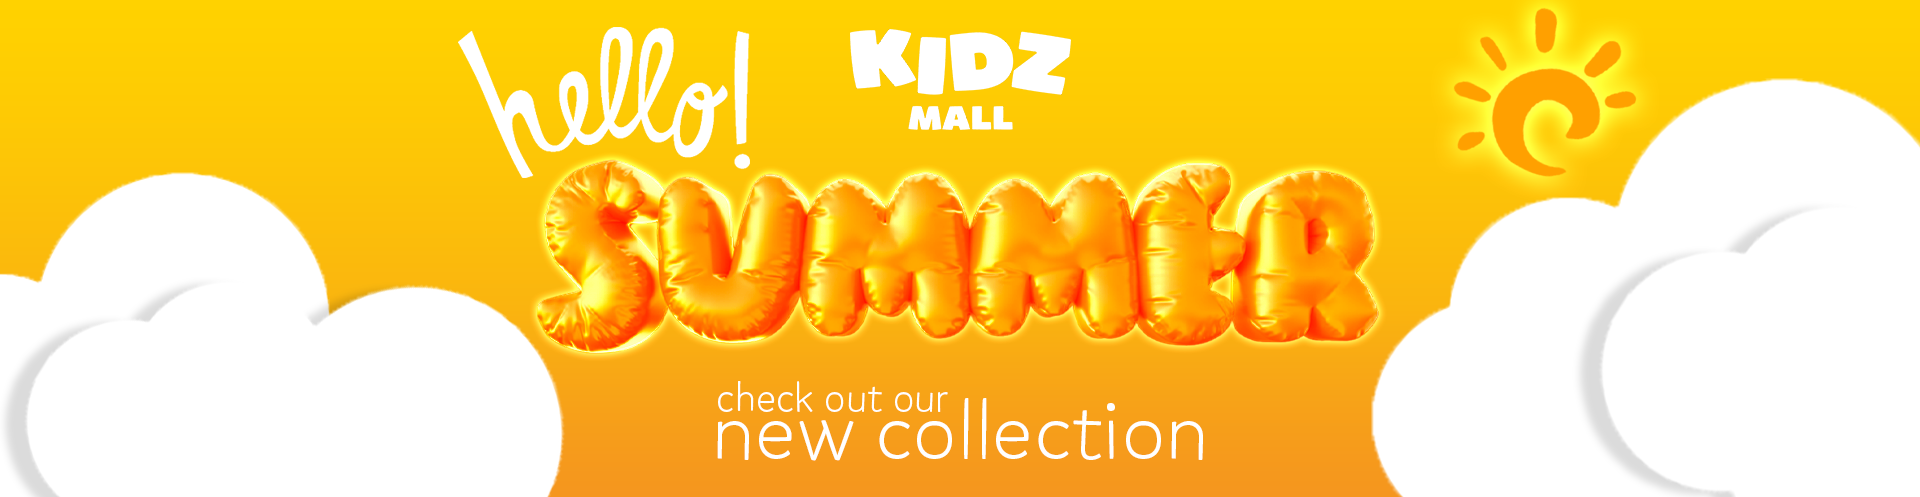 SUMMER Kidz Mall